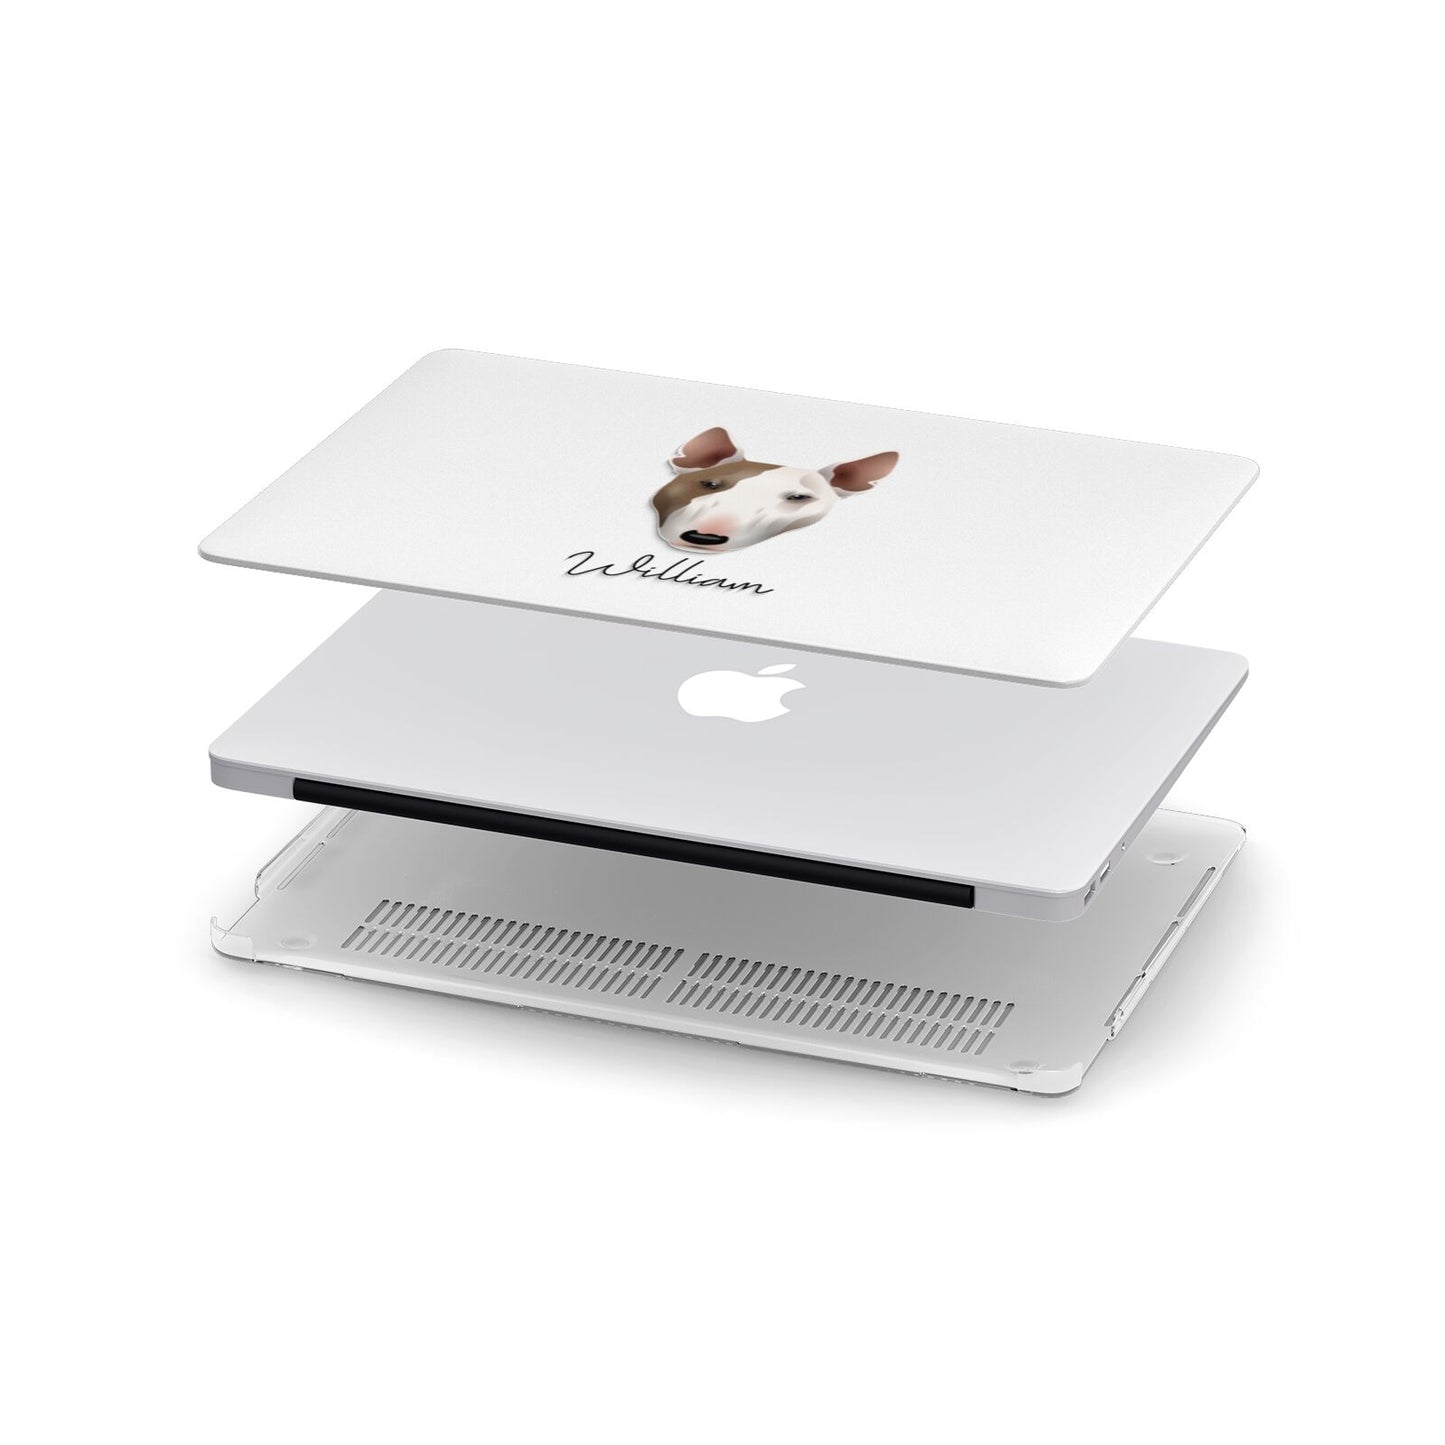 Bull Terrier Personalised Apple MacBook Case in Detail